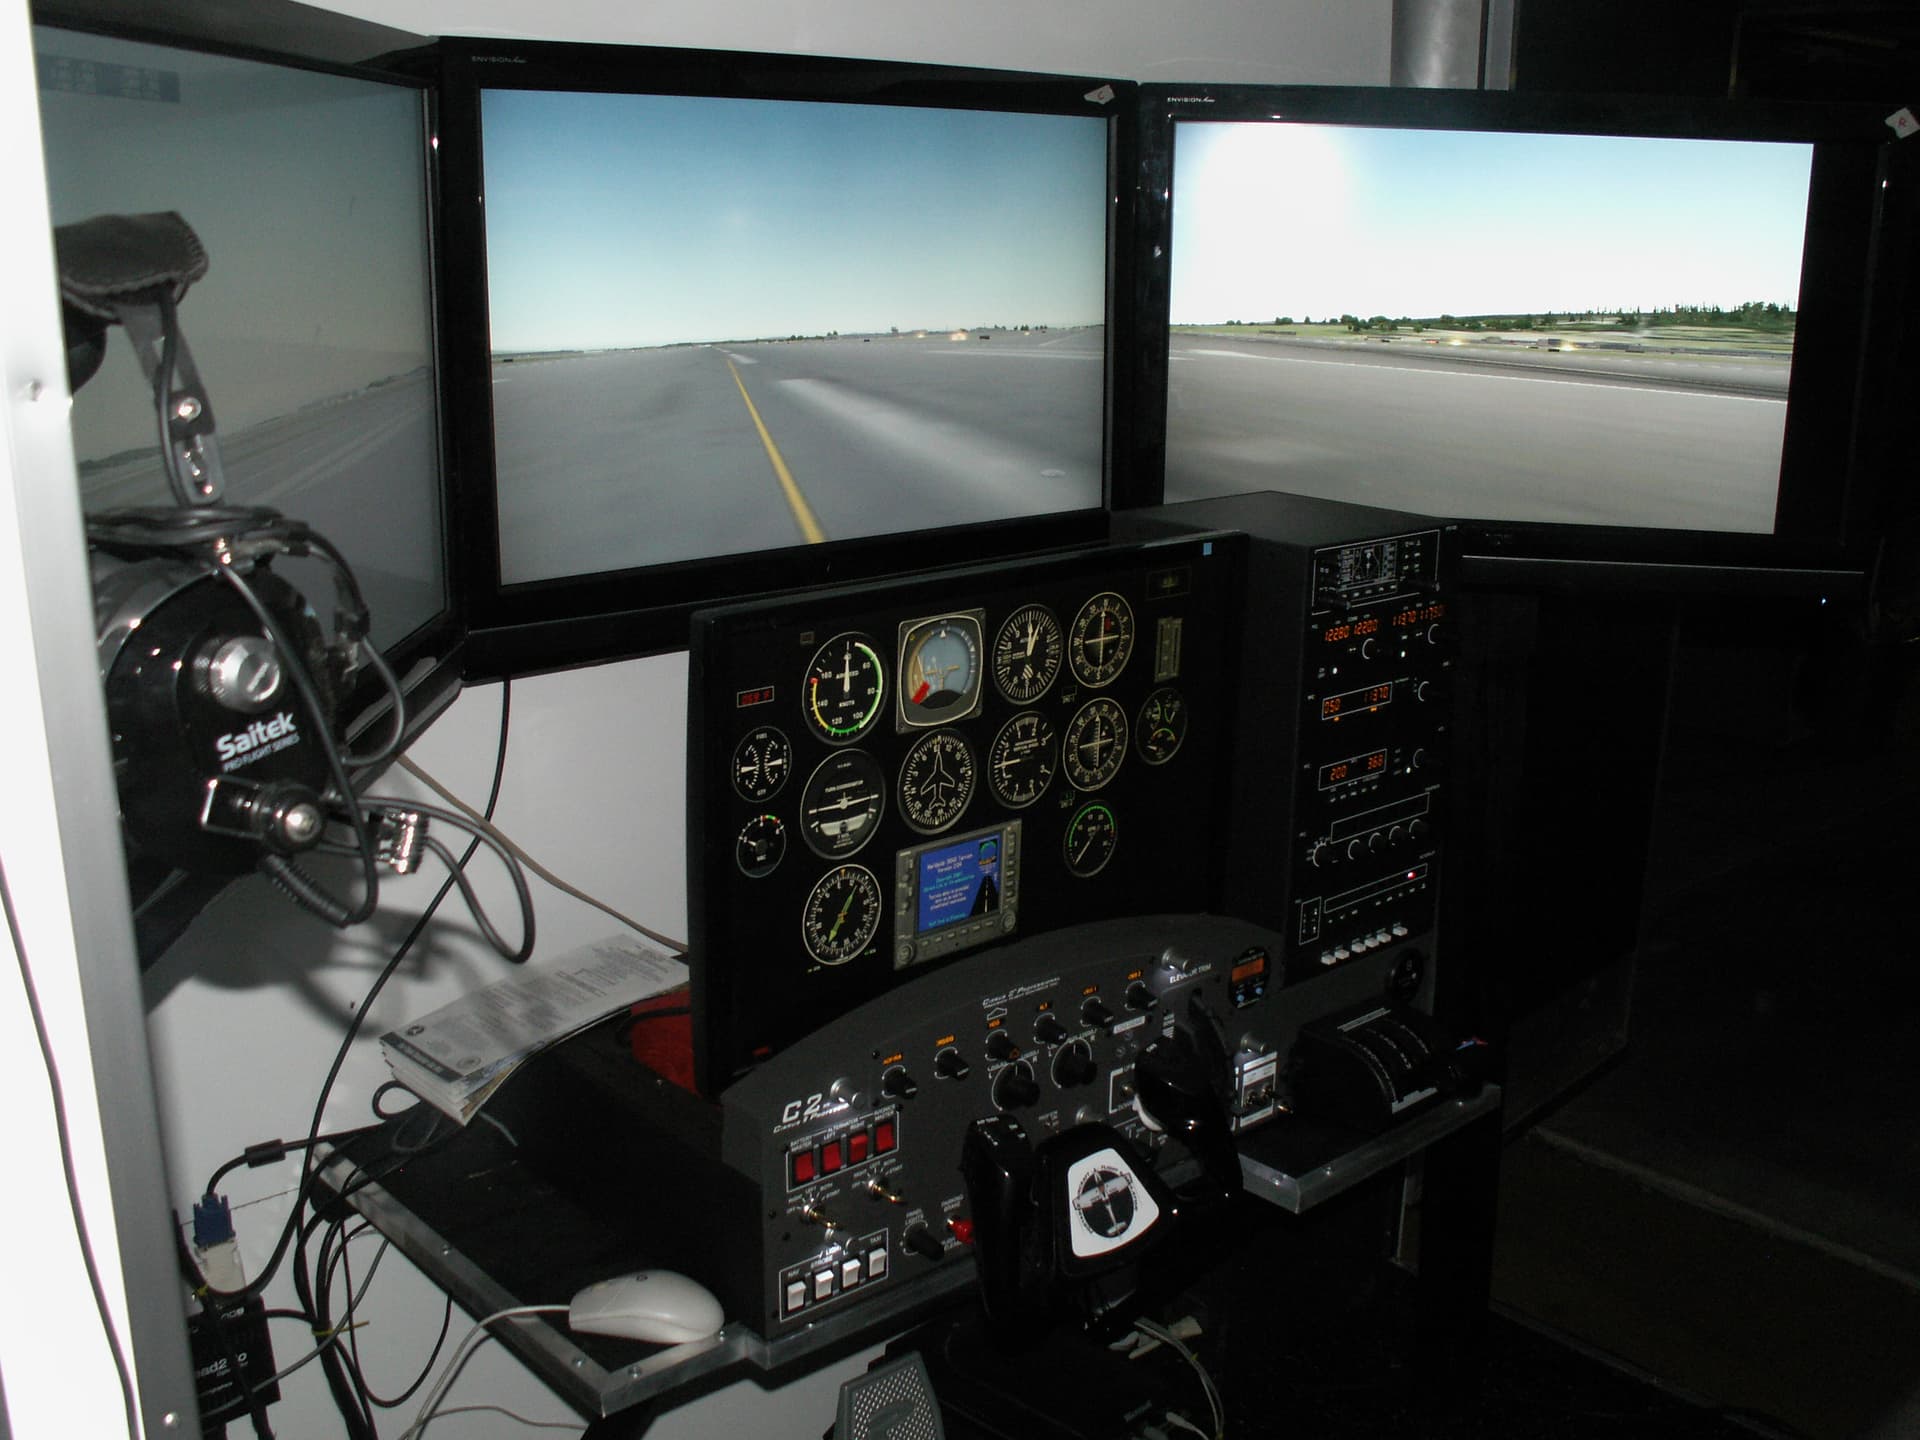 DIY Flight Sims  How to Build a Home Flight Simulator